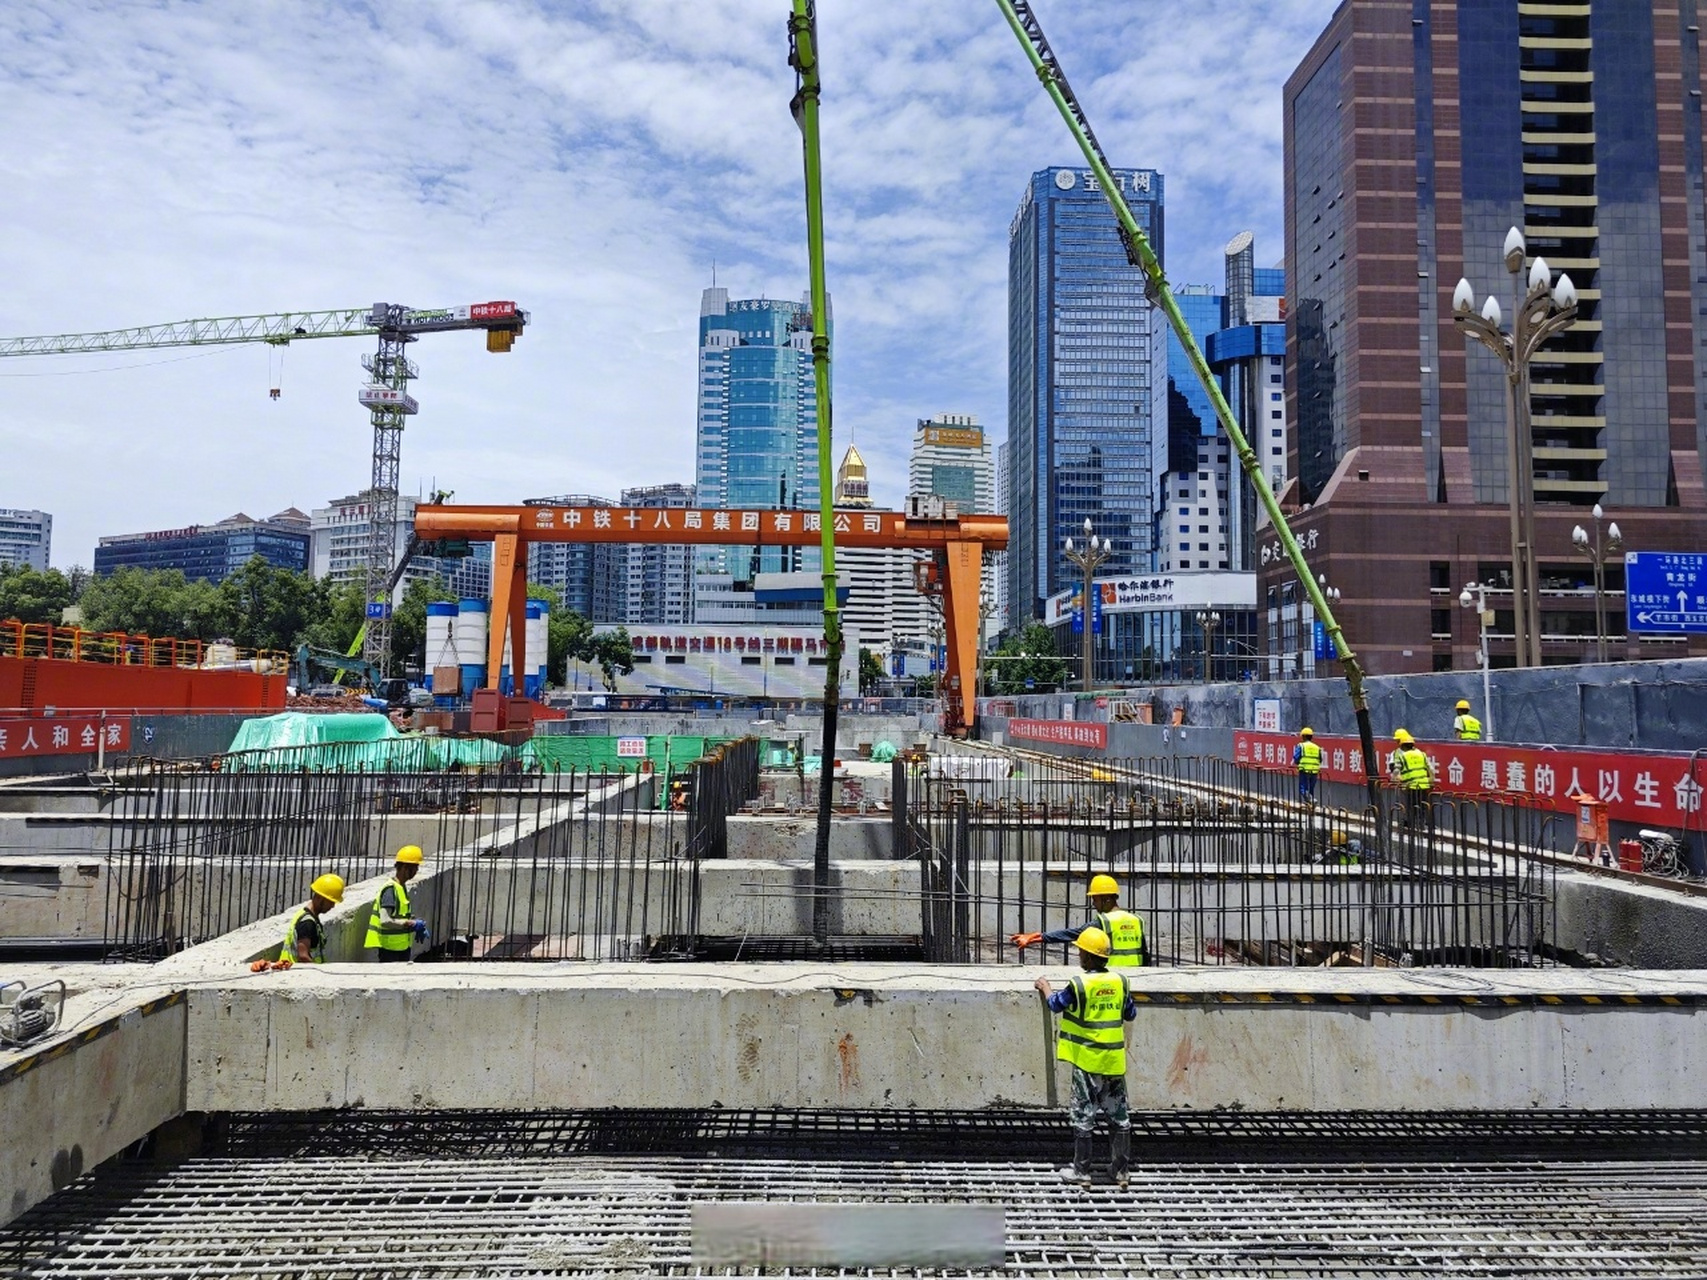 骡马市站主体结构封顶】7月15日,随着最后一块顶板砼浇筑完成,成都